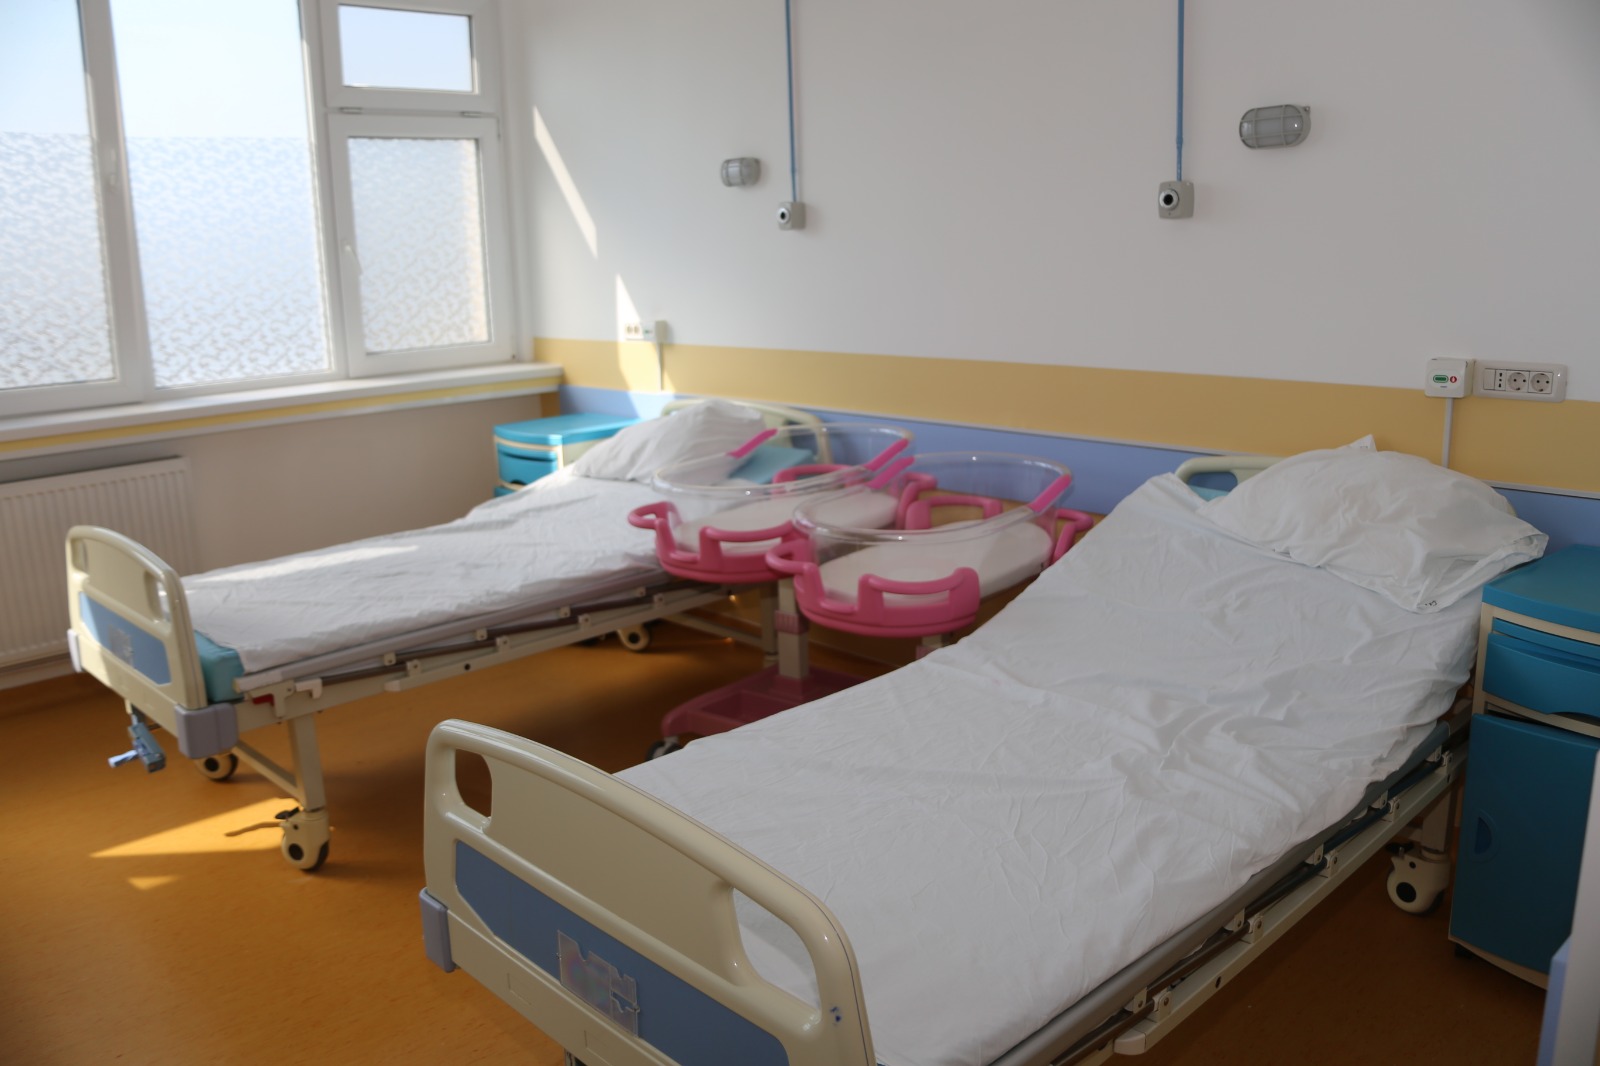 Spitalul Județean de Urgență din Târgu Jiu a alocat suma de aproape 700.000 de lei pentru a cumpăra truse complete pentru neurochirurgie